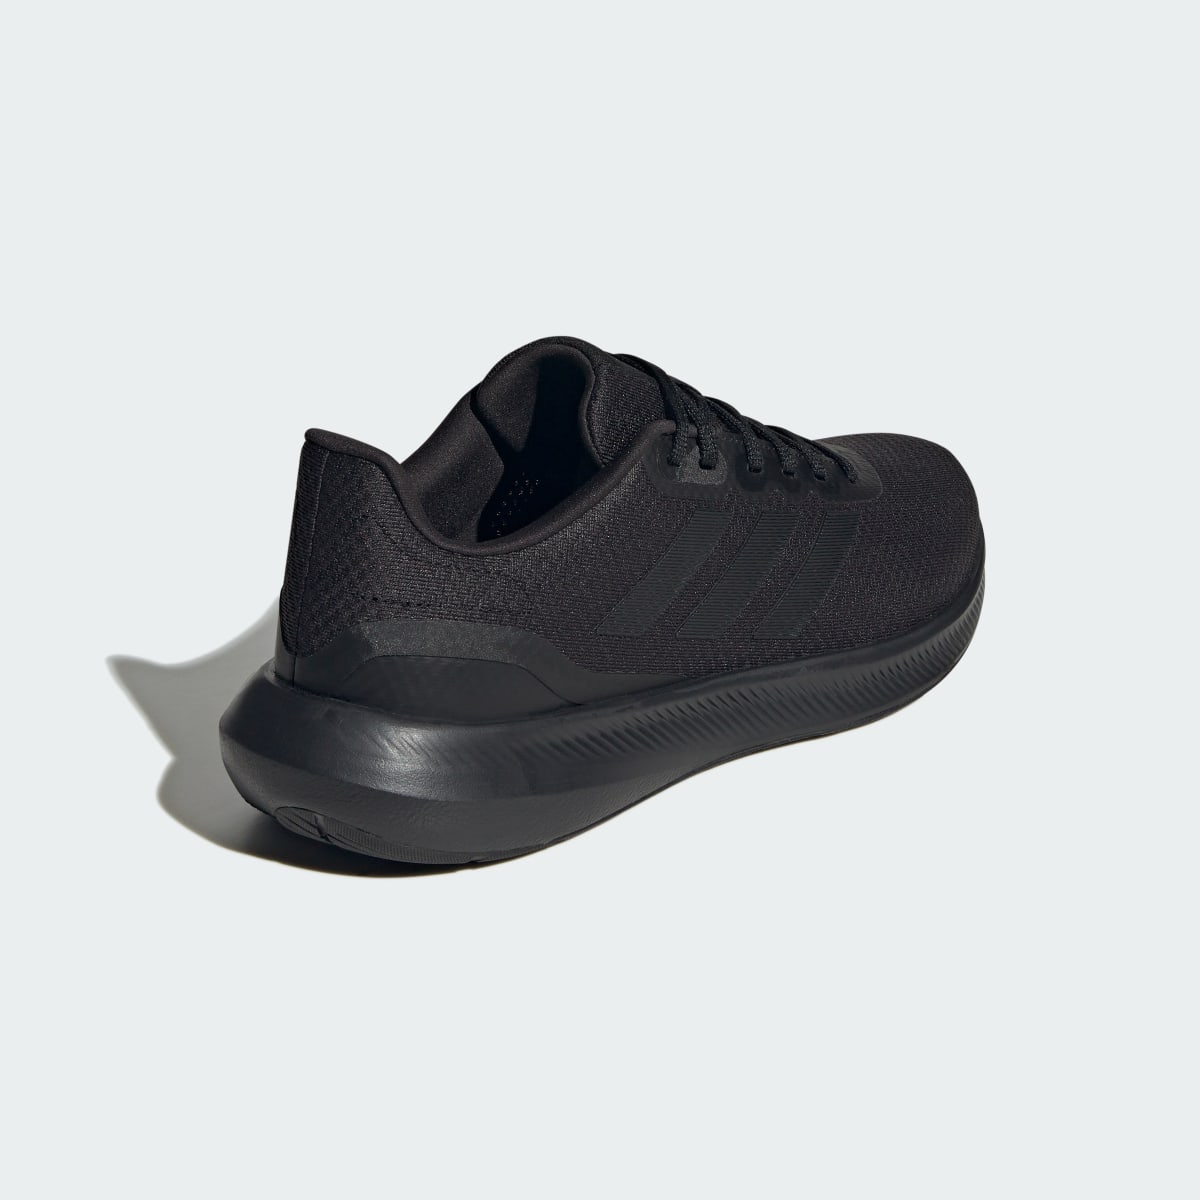 Adidas Runfalcon 3 Cloudfoam Low Running Shoes. 6